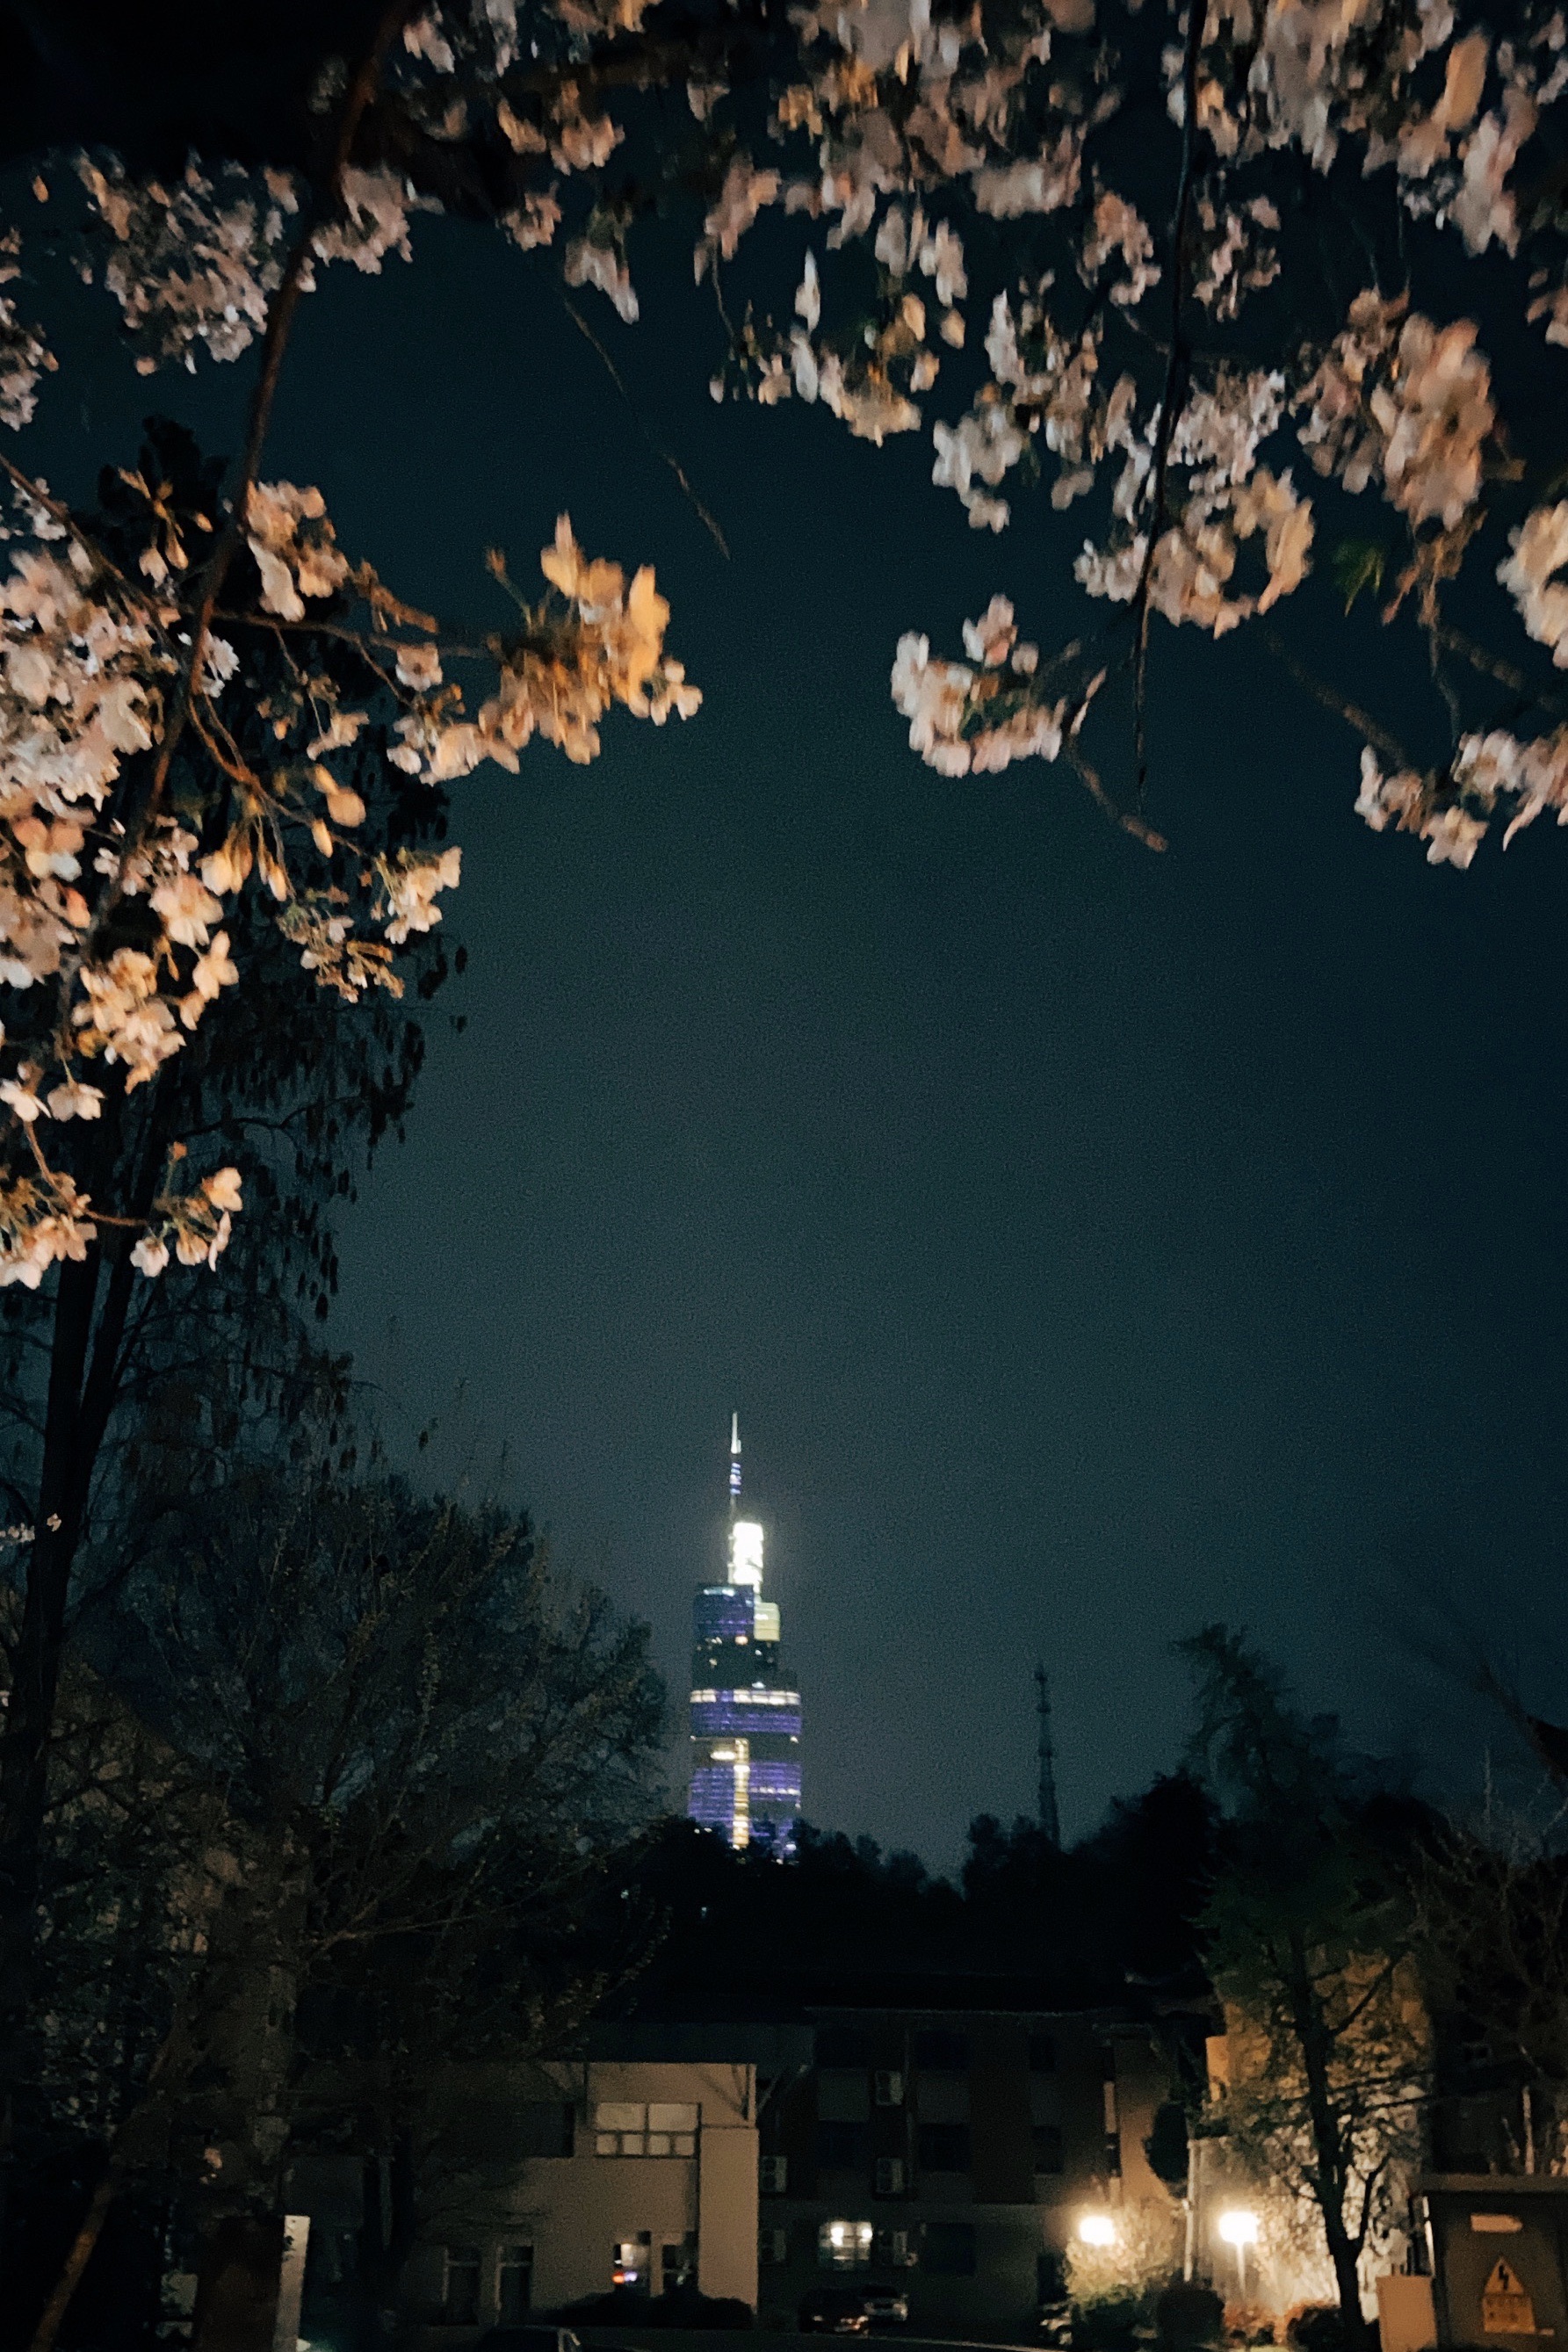 鸡鸣寺夜樱一个接近三月南京最好的机会_鸡鸣寺樱花大道